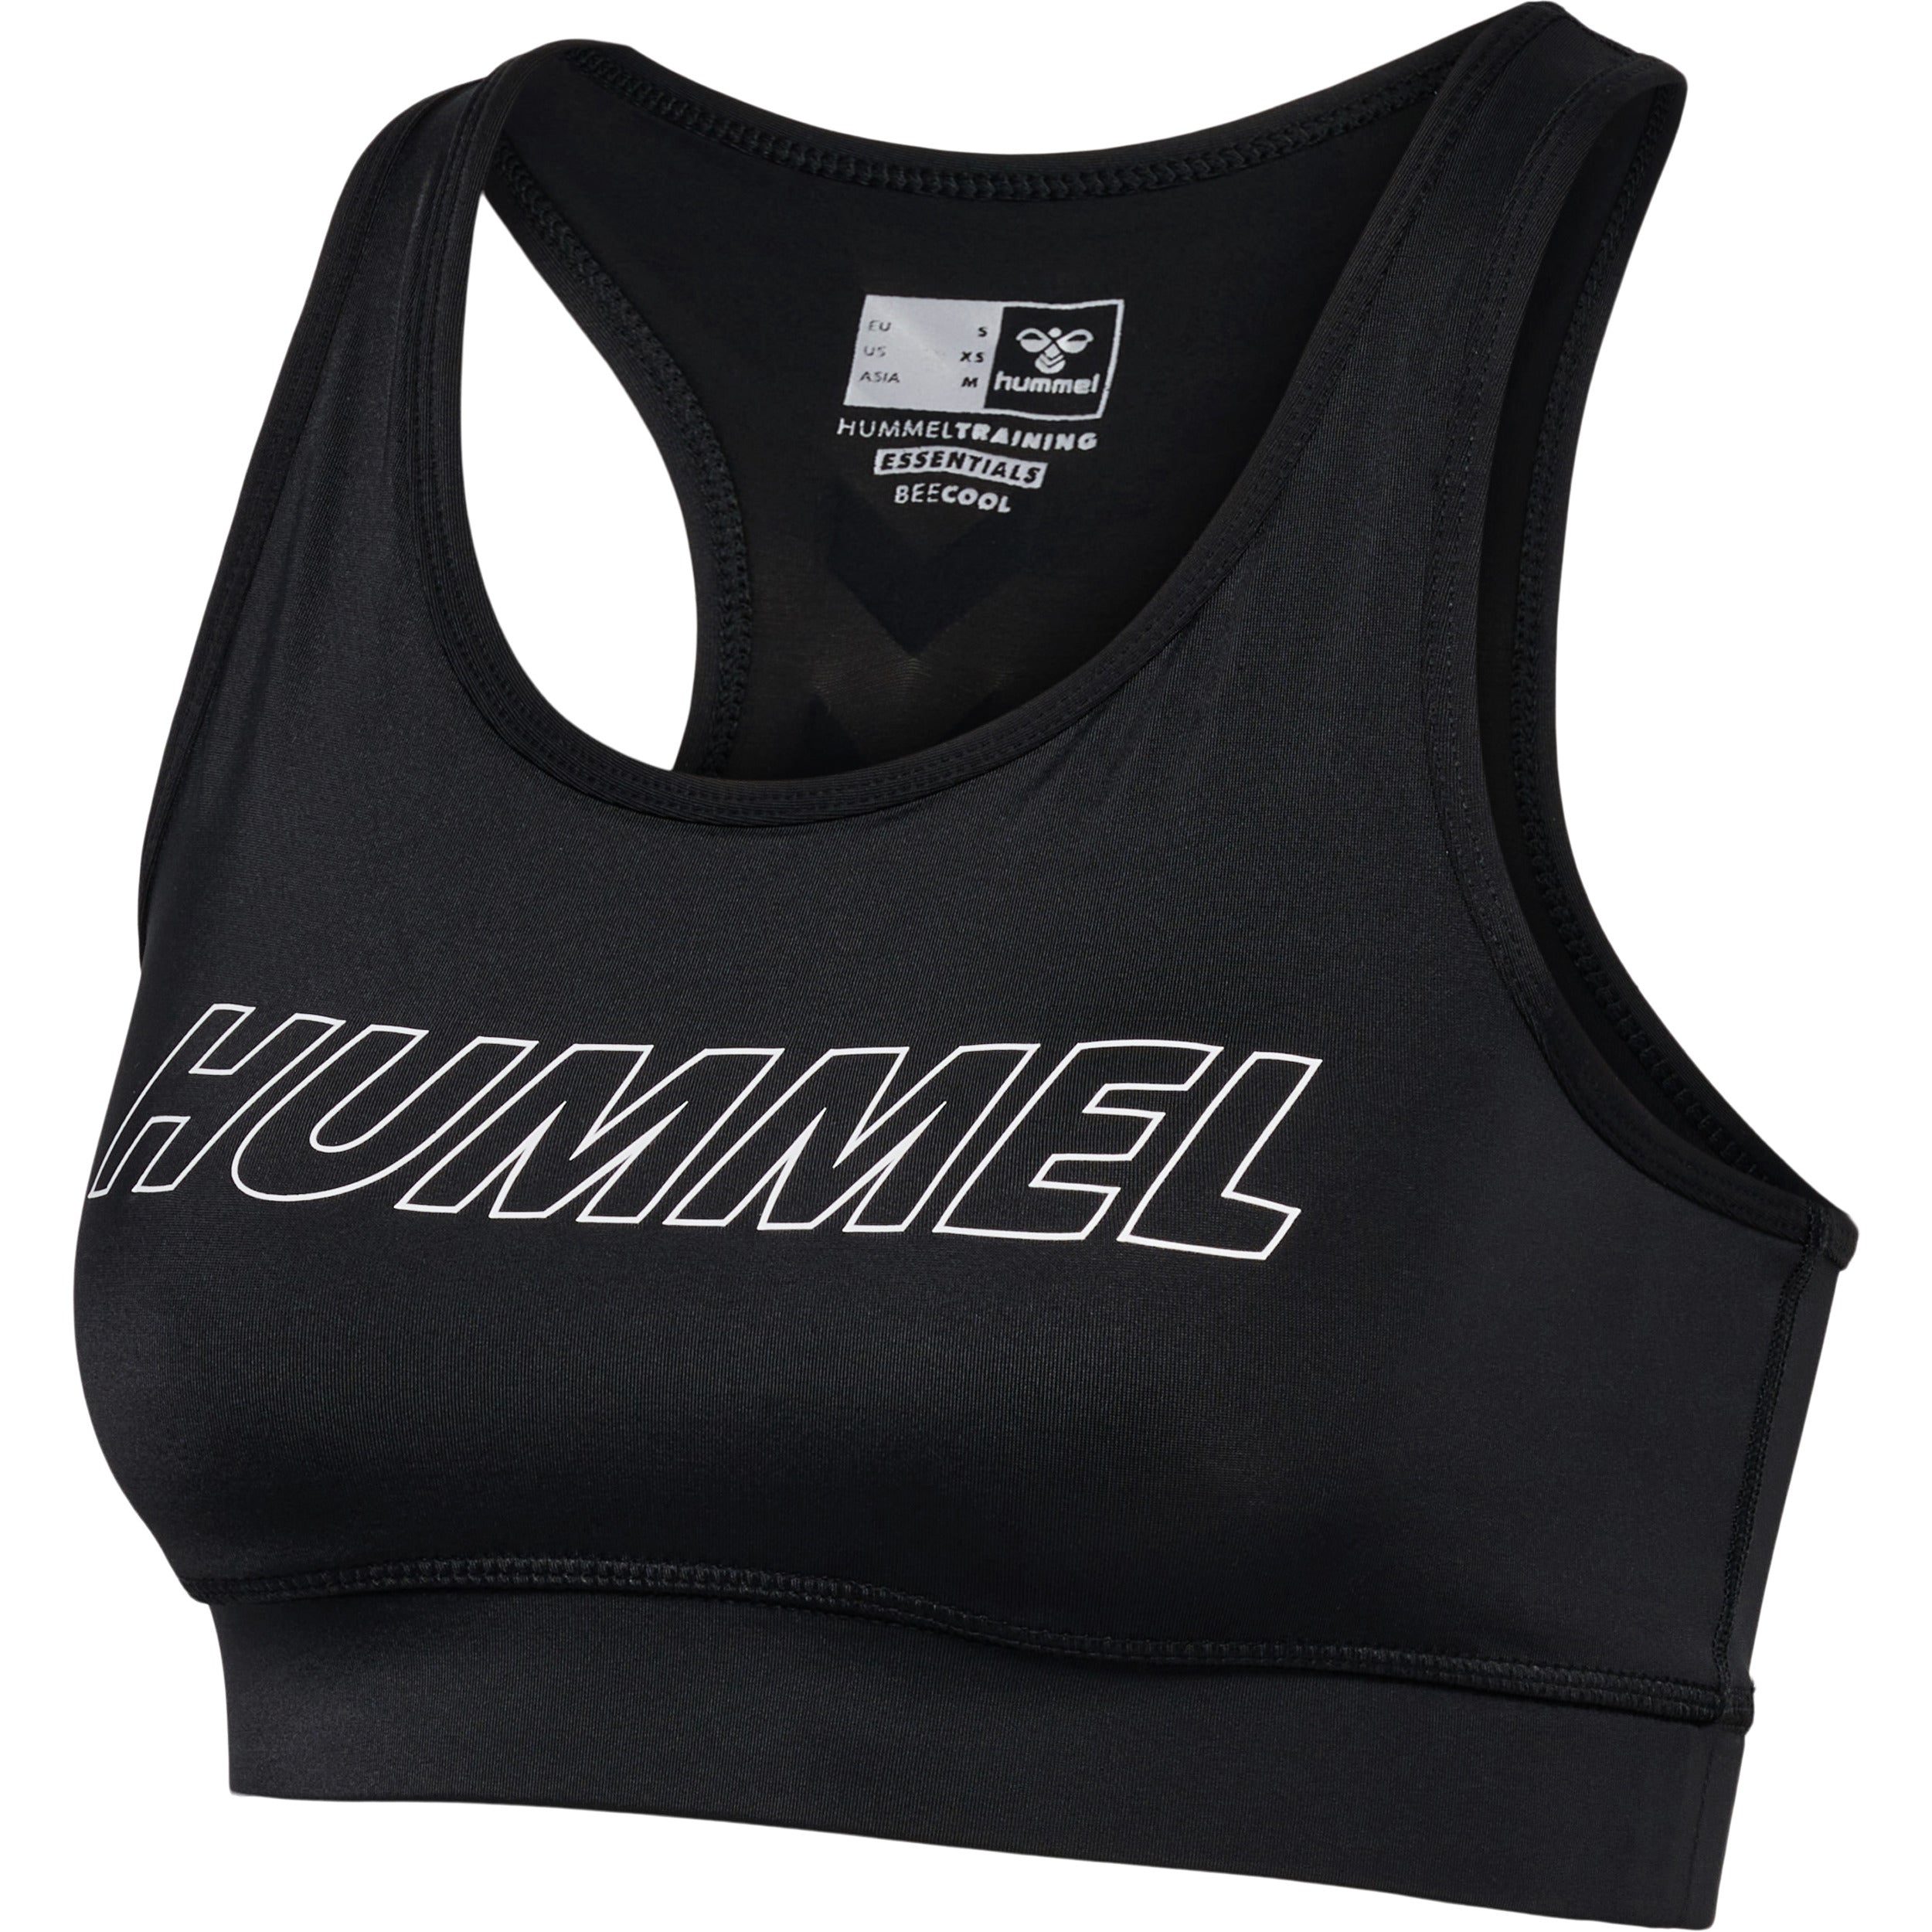 Brug Hummel TOLA Sports Bra  -  Black til en forbedret oplevelse